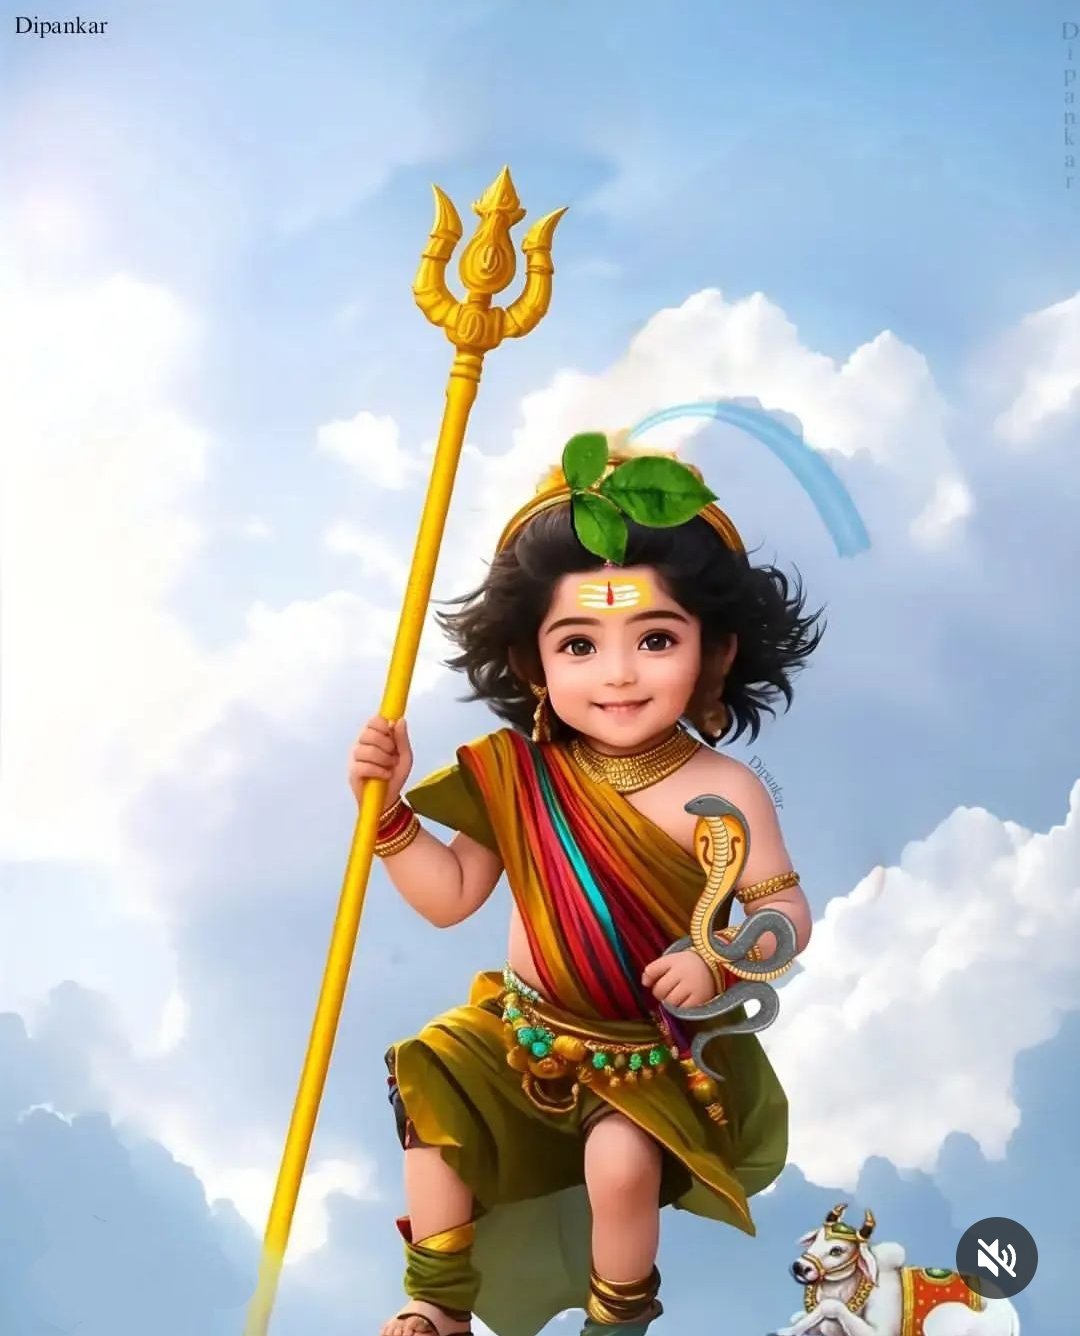 Adorable Vishnu 3d Rendered Hindu Deity Illustration Background, Vishnu,  Lord, Indian God Background Image And Wallpaper for Free Download